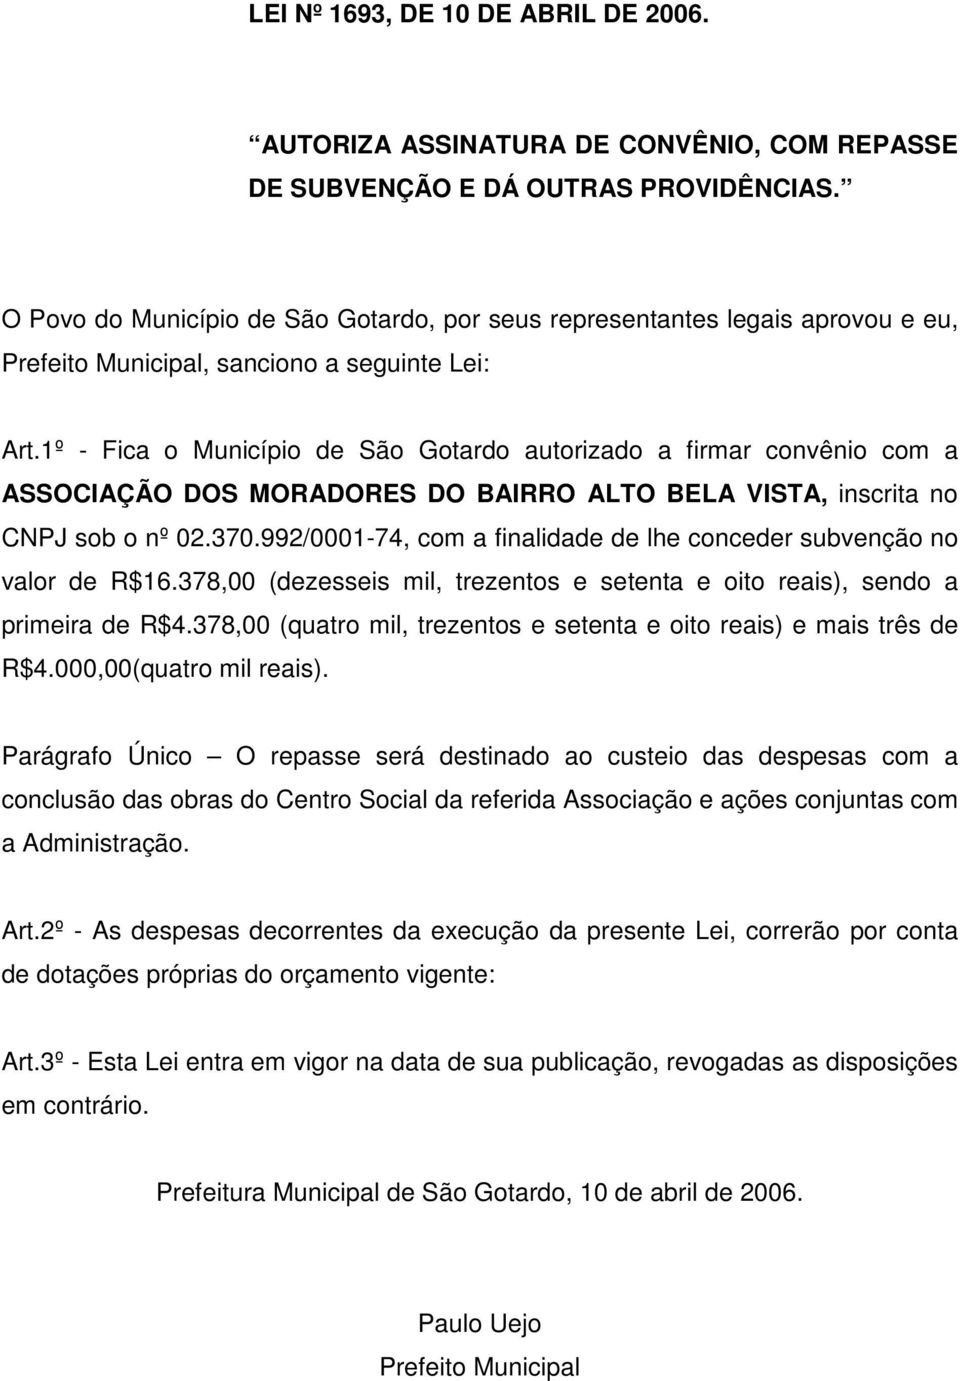 1º - Fica o Município de São Gotardo autorizado a firmar convênio com a ASSOCIAÇÃO DOS MORADORES DO BAIRRO ALTO BELA VISTA, inscrita no CNPJ sob o nº 02.370.